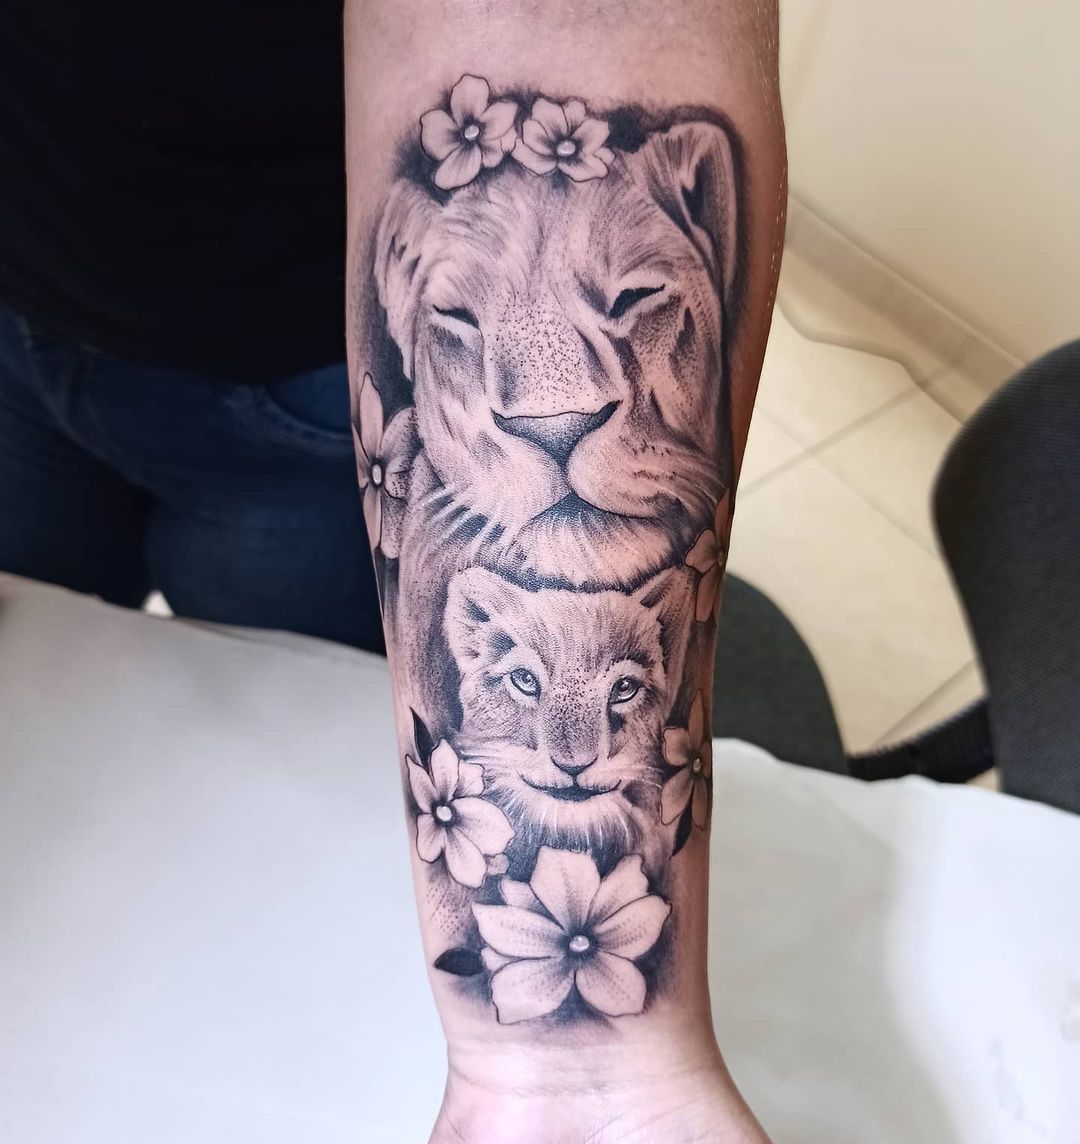 Tatuagem de leoa 75 inspirações para se apaixonar e